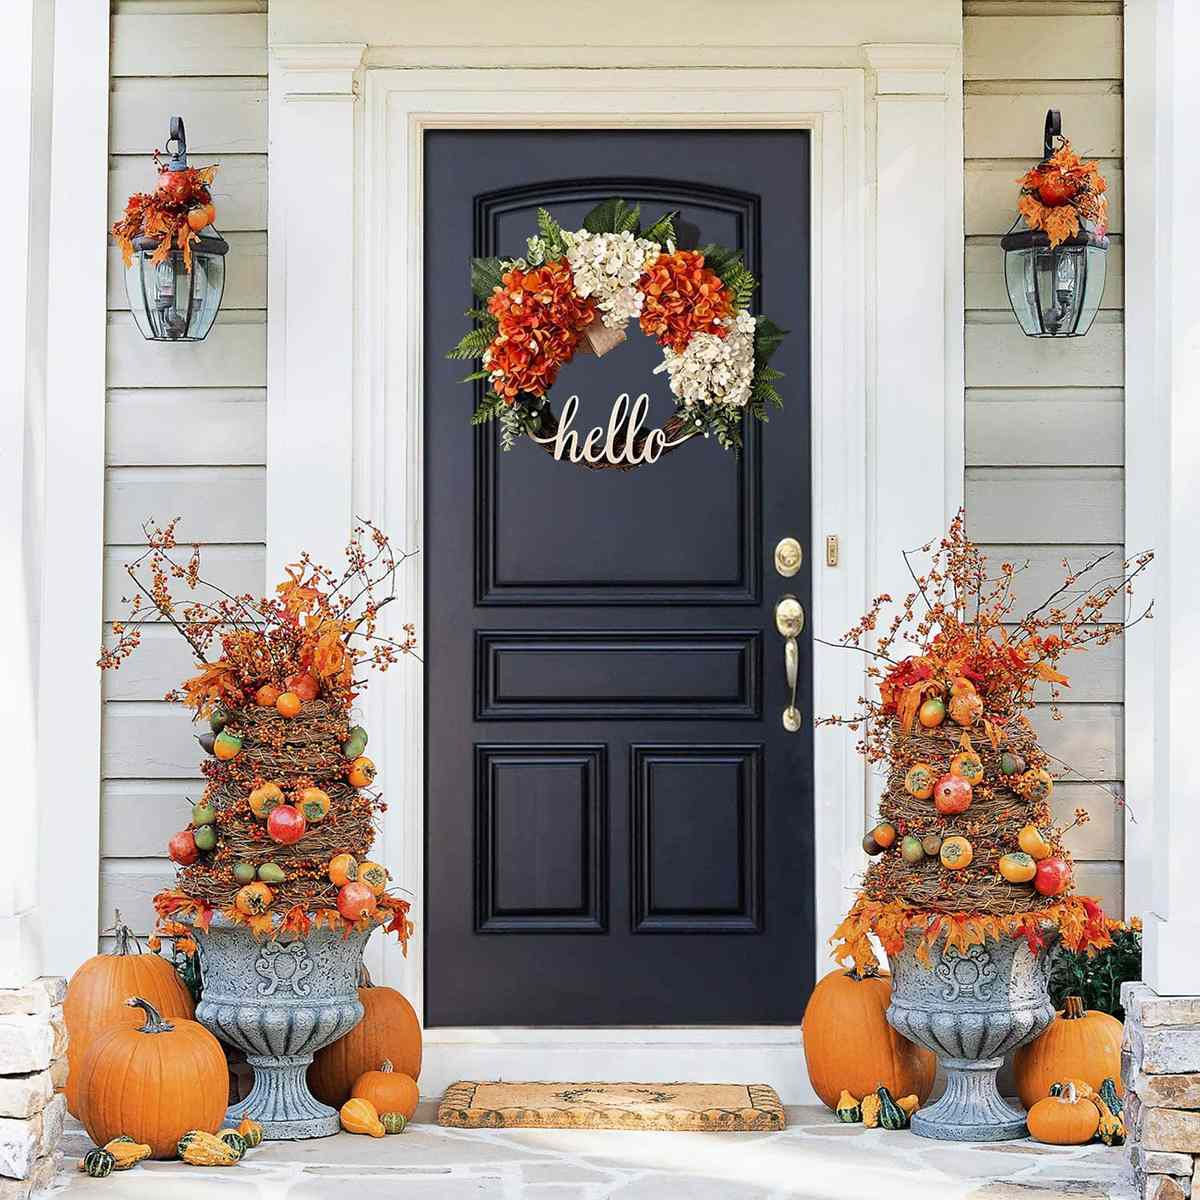 Autumn Front Door Decorations Wall Decor Door Wreath Floral Wreath Artificial Orange Fall Wreath for Front Door 15''